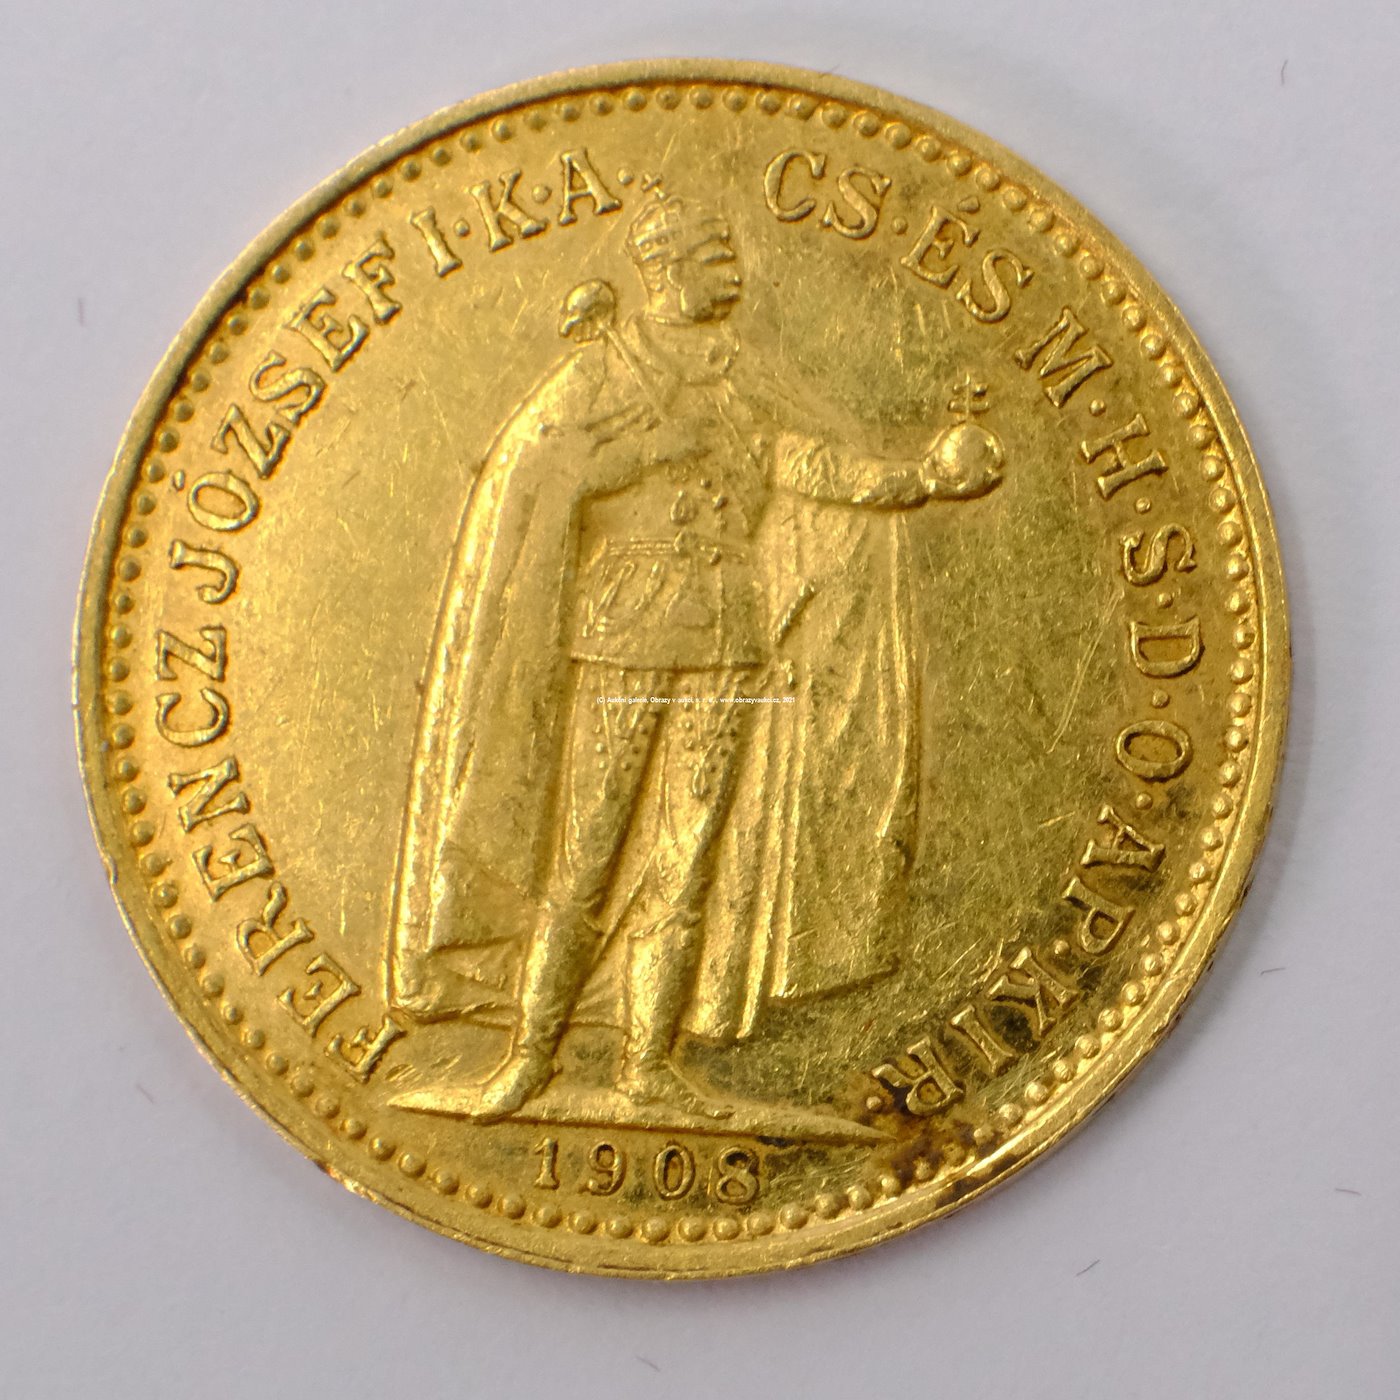 .. - Rakousko Uhersko zlatá 10 Koruna 1908 K.B. uherská. Zlato 900/1000, hrubá hmotnost mince 3,387g